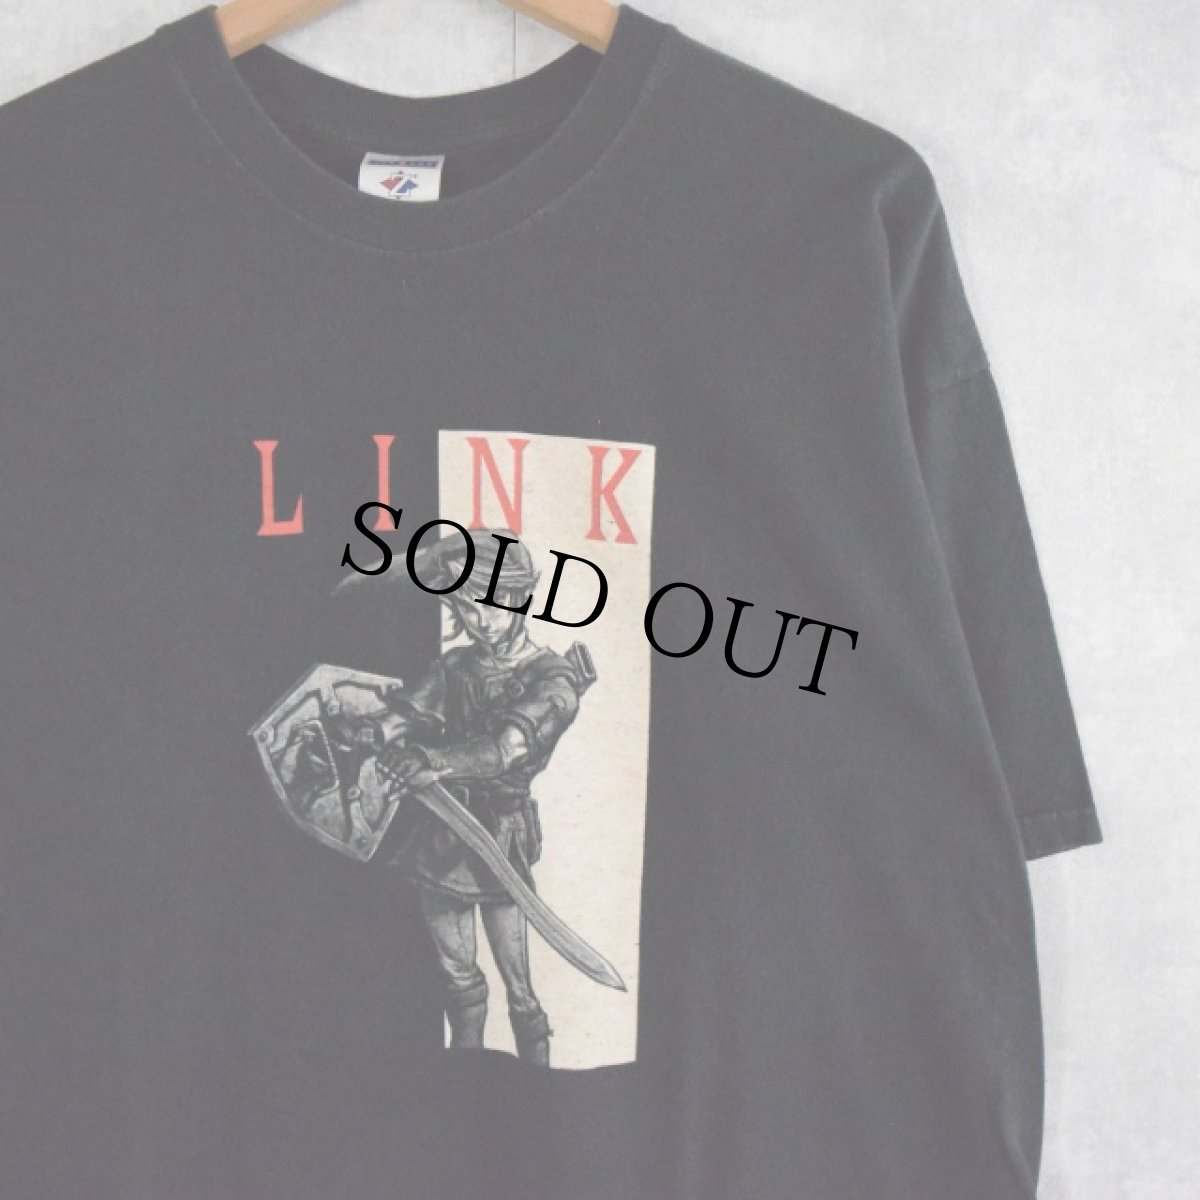 画像1: ゼルダの伝説 "LINK" ゲームキャラクターTシャツ XL (1)